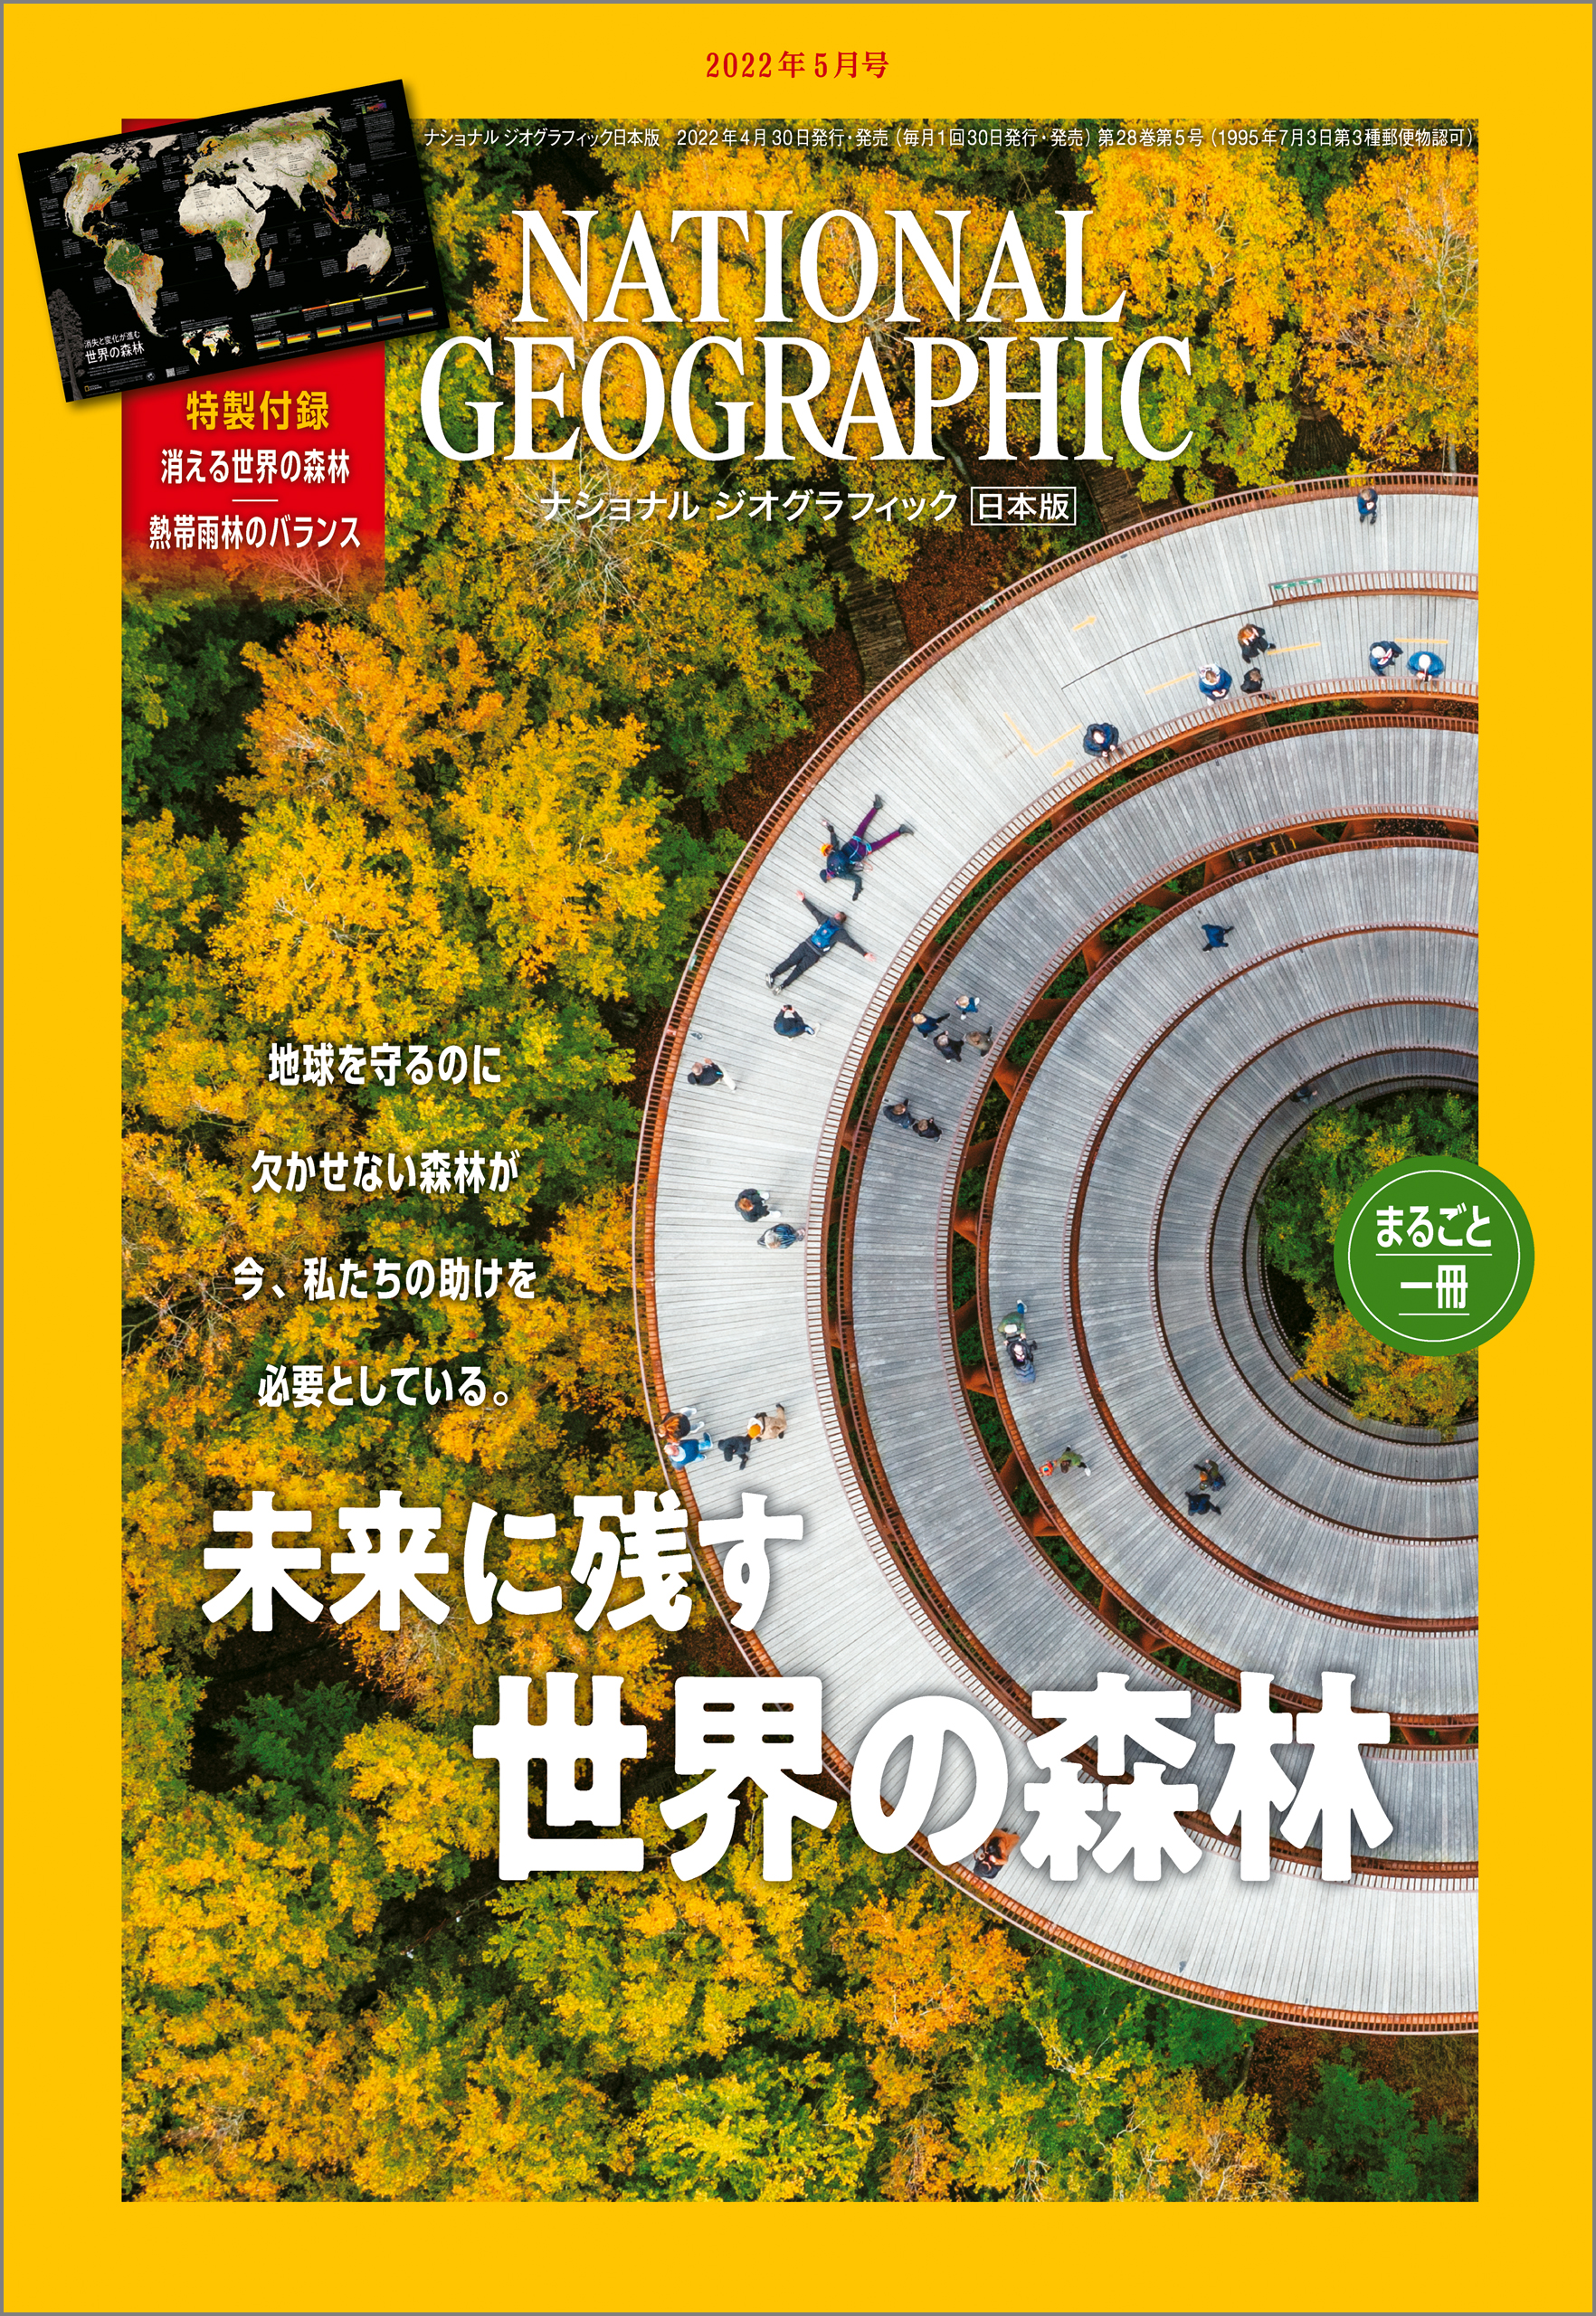 ナショナルジオグラフィック日本版2014-2015